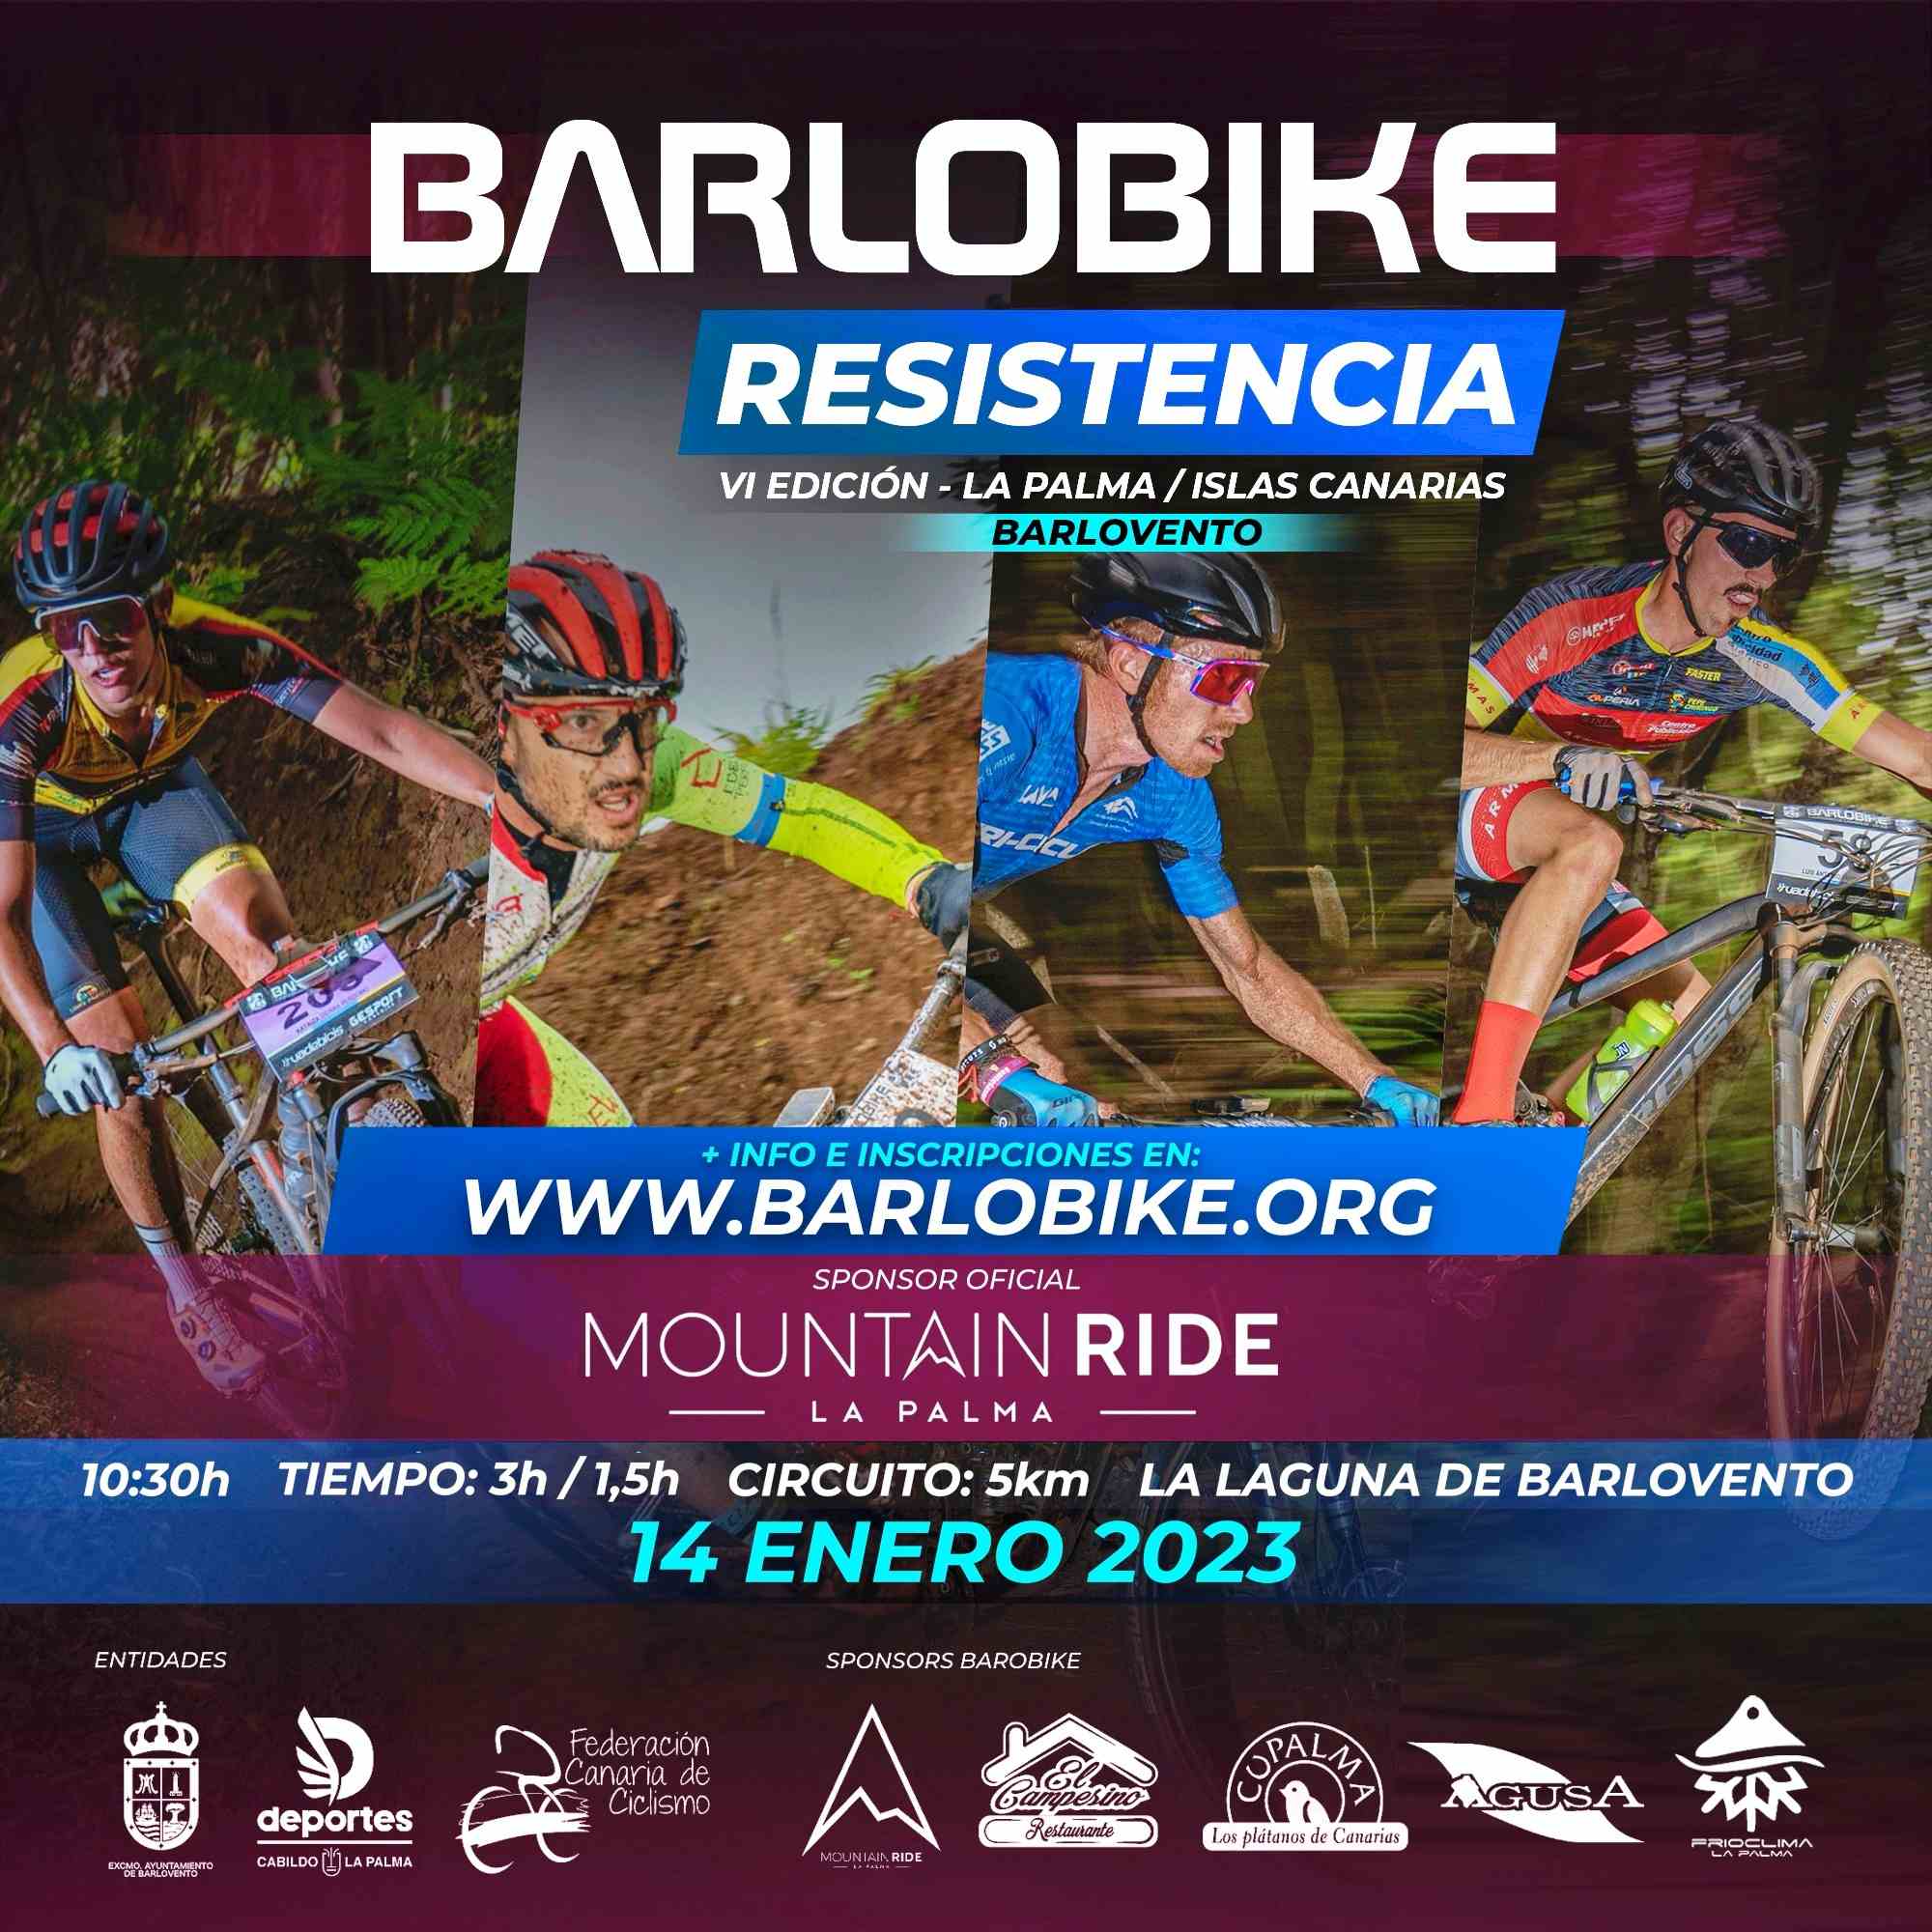 BARLOBIKE XC0 RESISTENCIA 2023 - Iscriviti